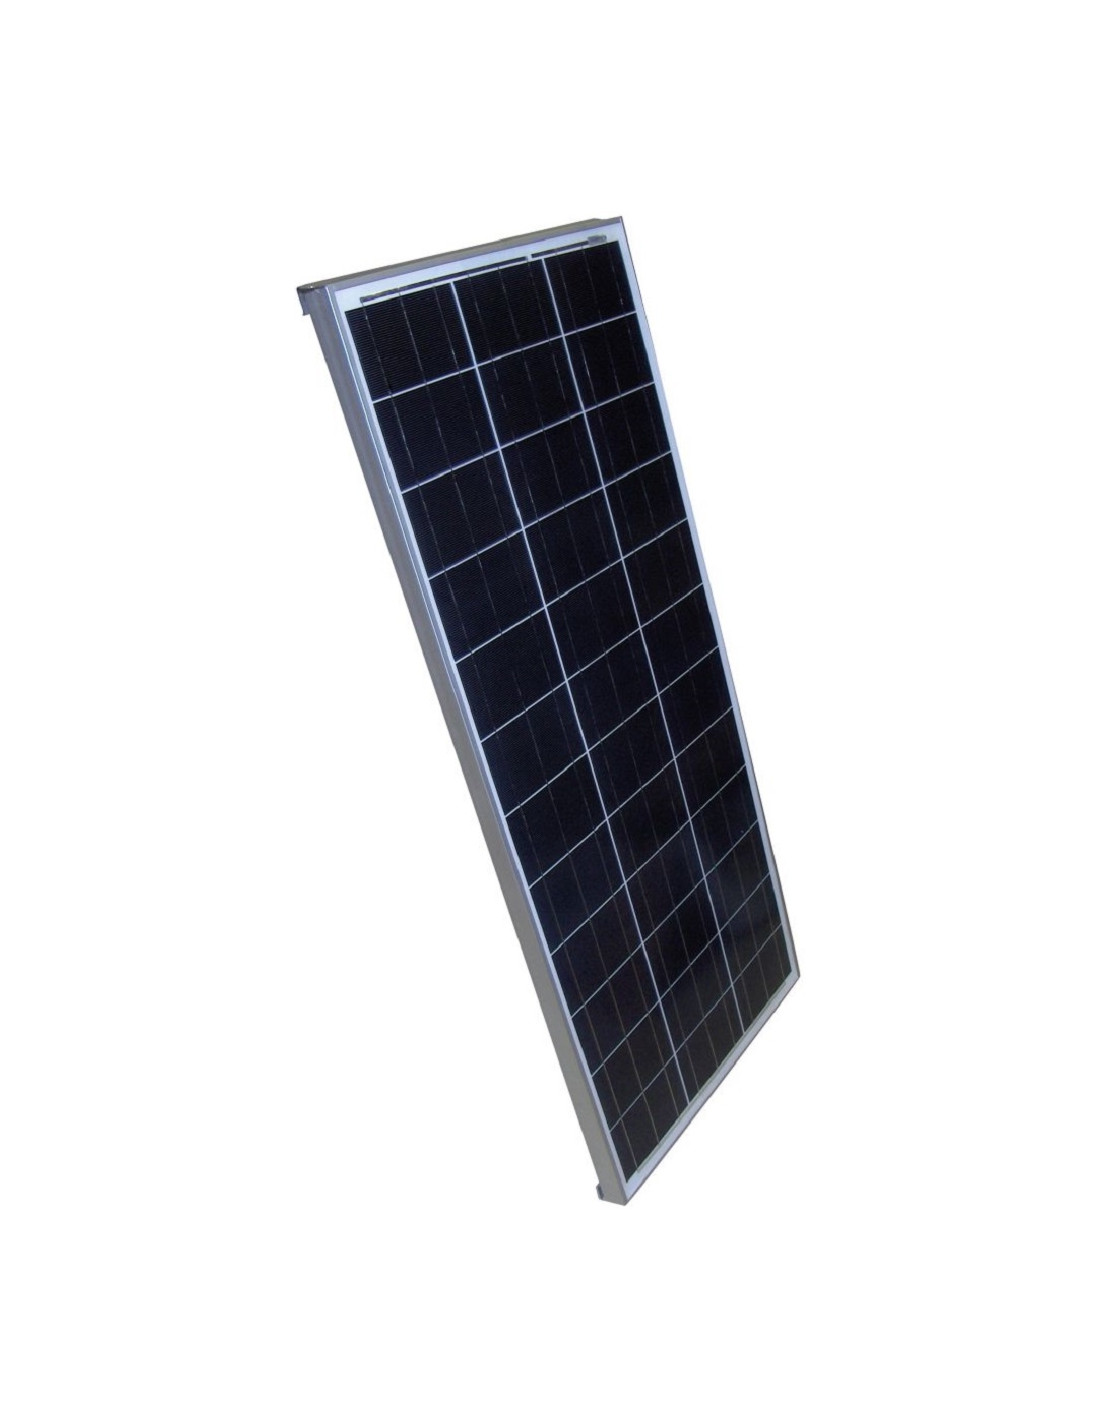 Panneau solaire Essential 110w + Câble + Régulateur solaire + Presse-étoupe.